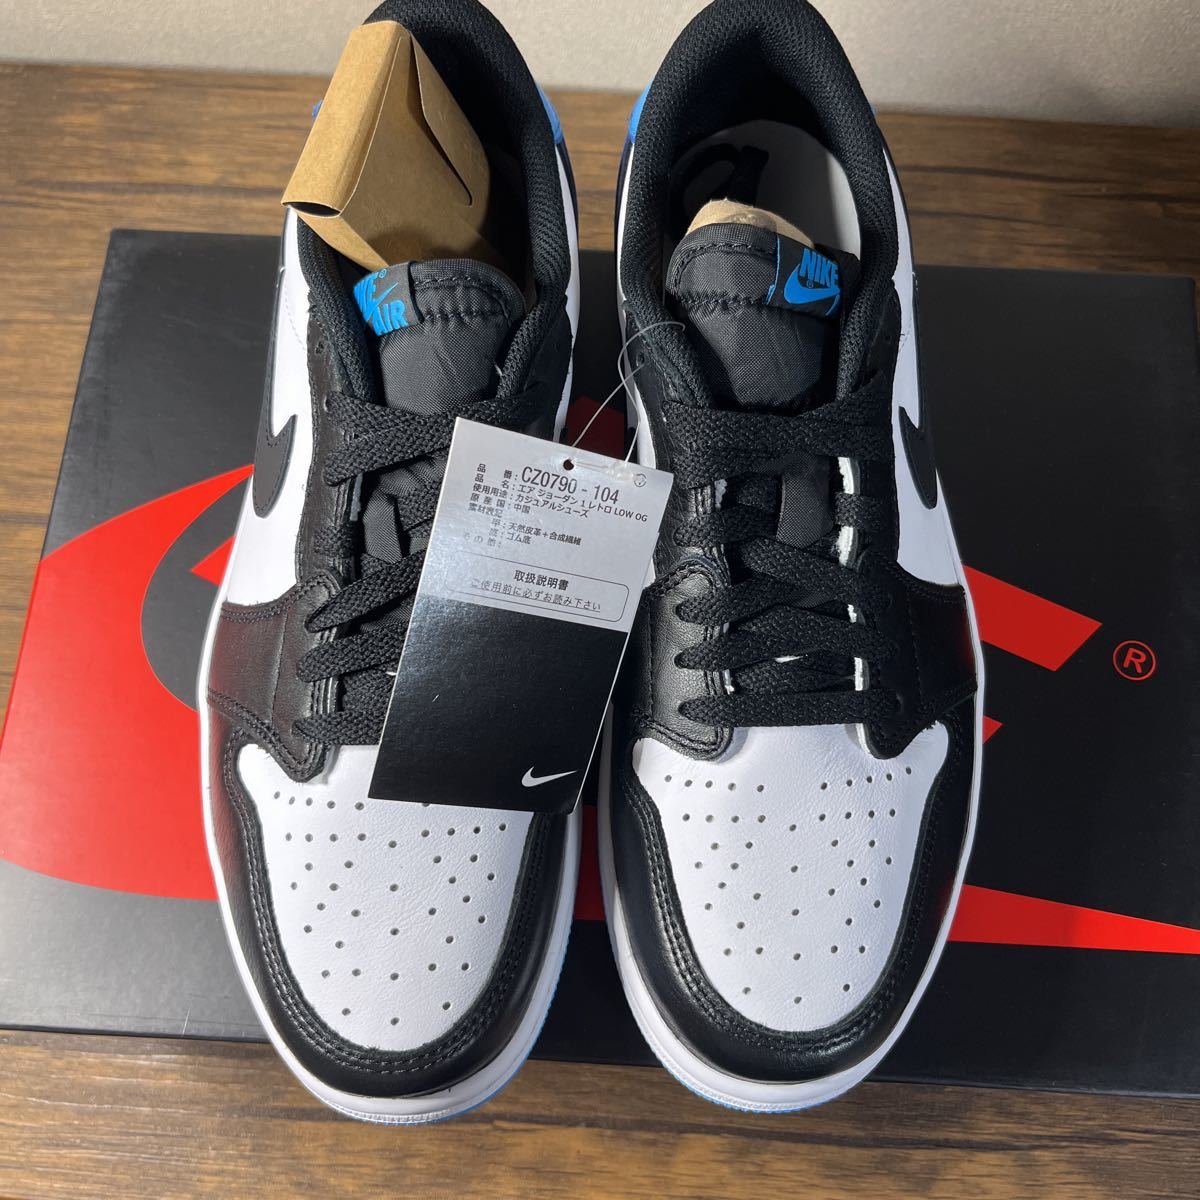 Nike Air Jordan 1 Low OG Black and Dark Powder Blue/UNCナイキ エア